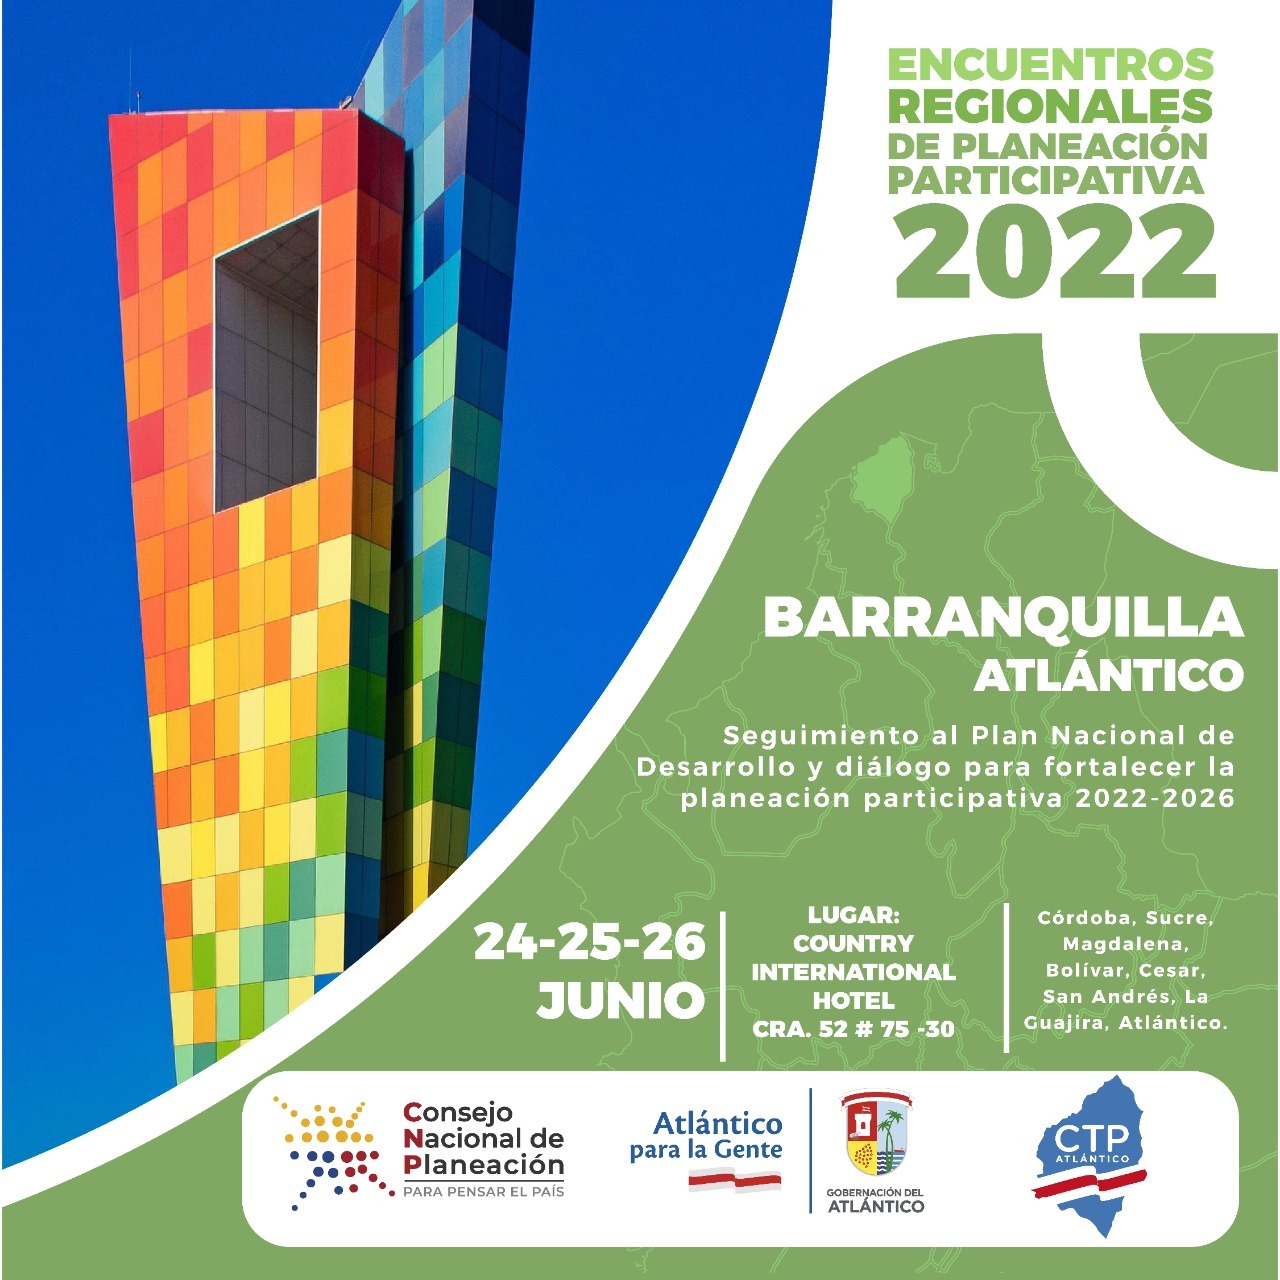 Atlántico, anfitrión del Encuentro Regional de Planeación Participativa 2022